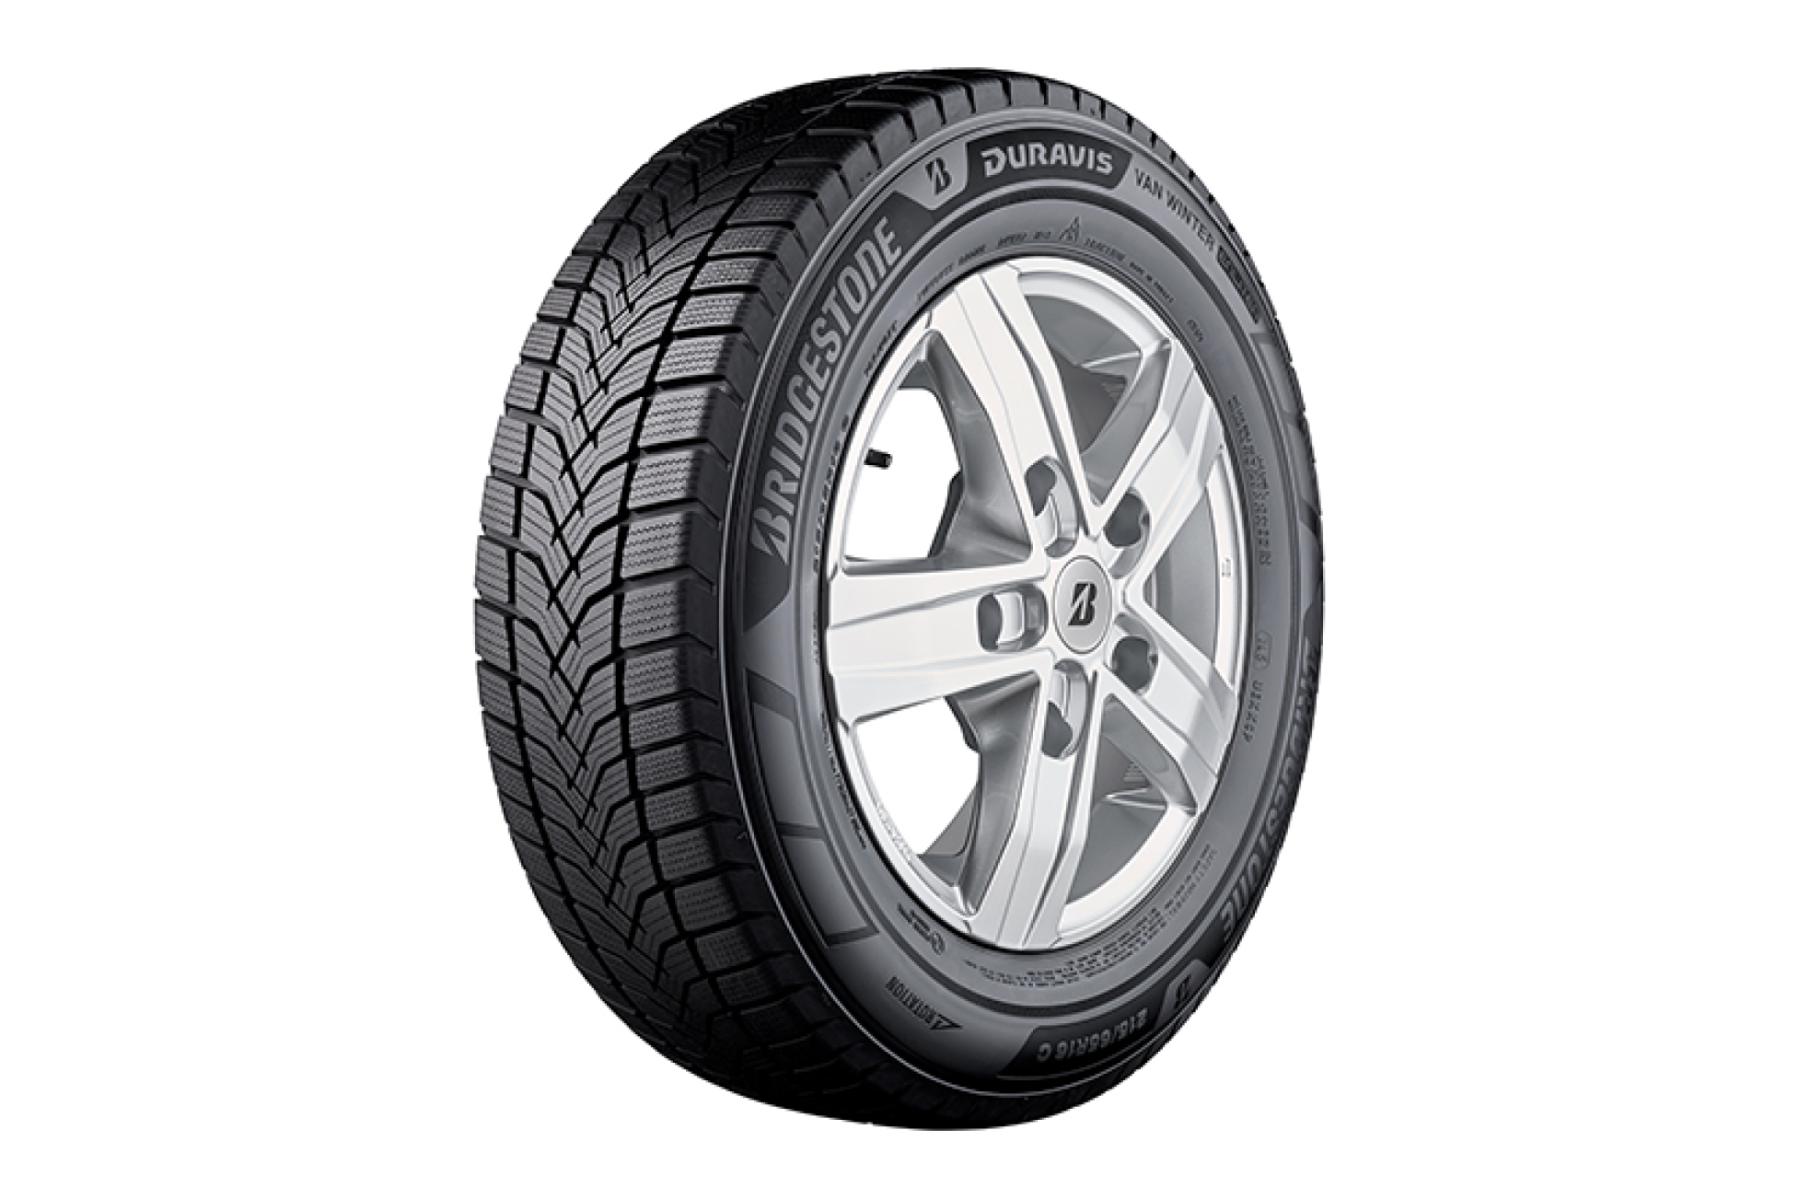 Bridgestone voegt ‘Duravis Van Winter’ toe aan bedrijfswagen-mix